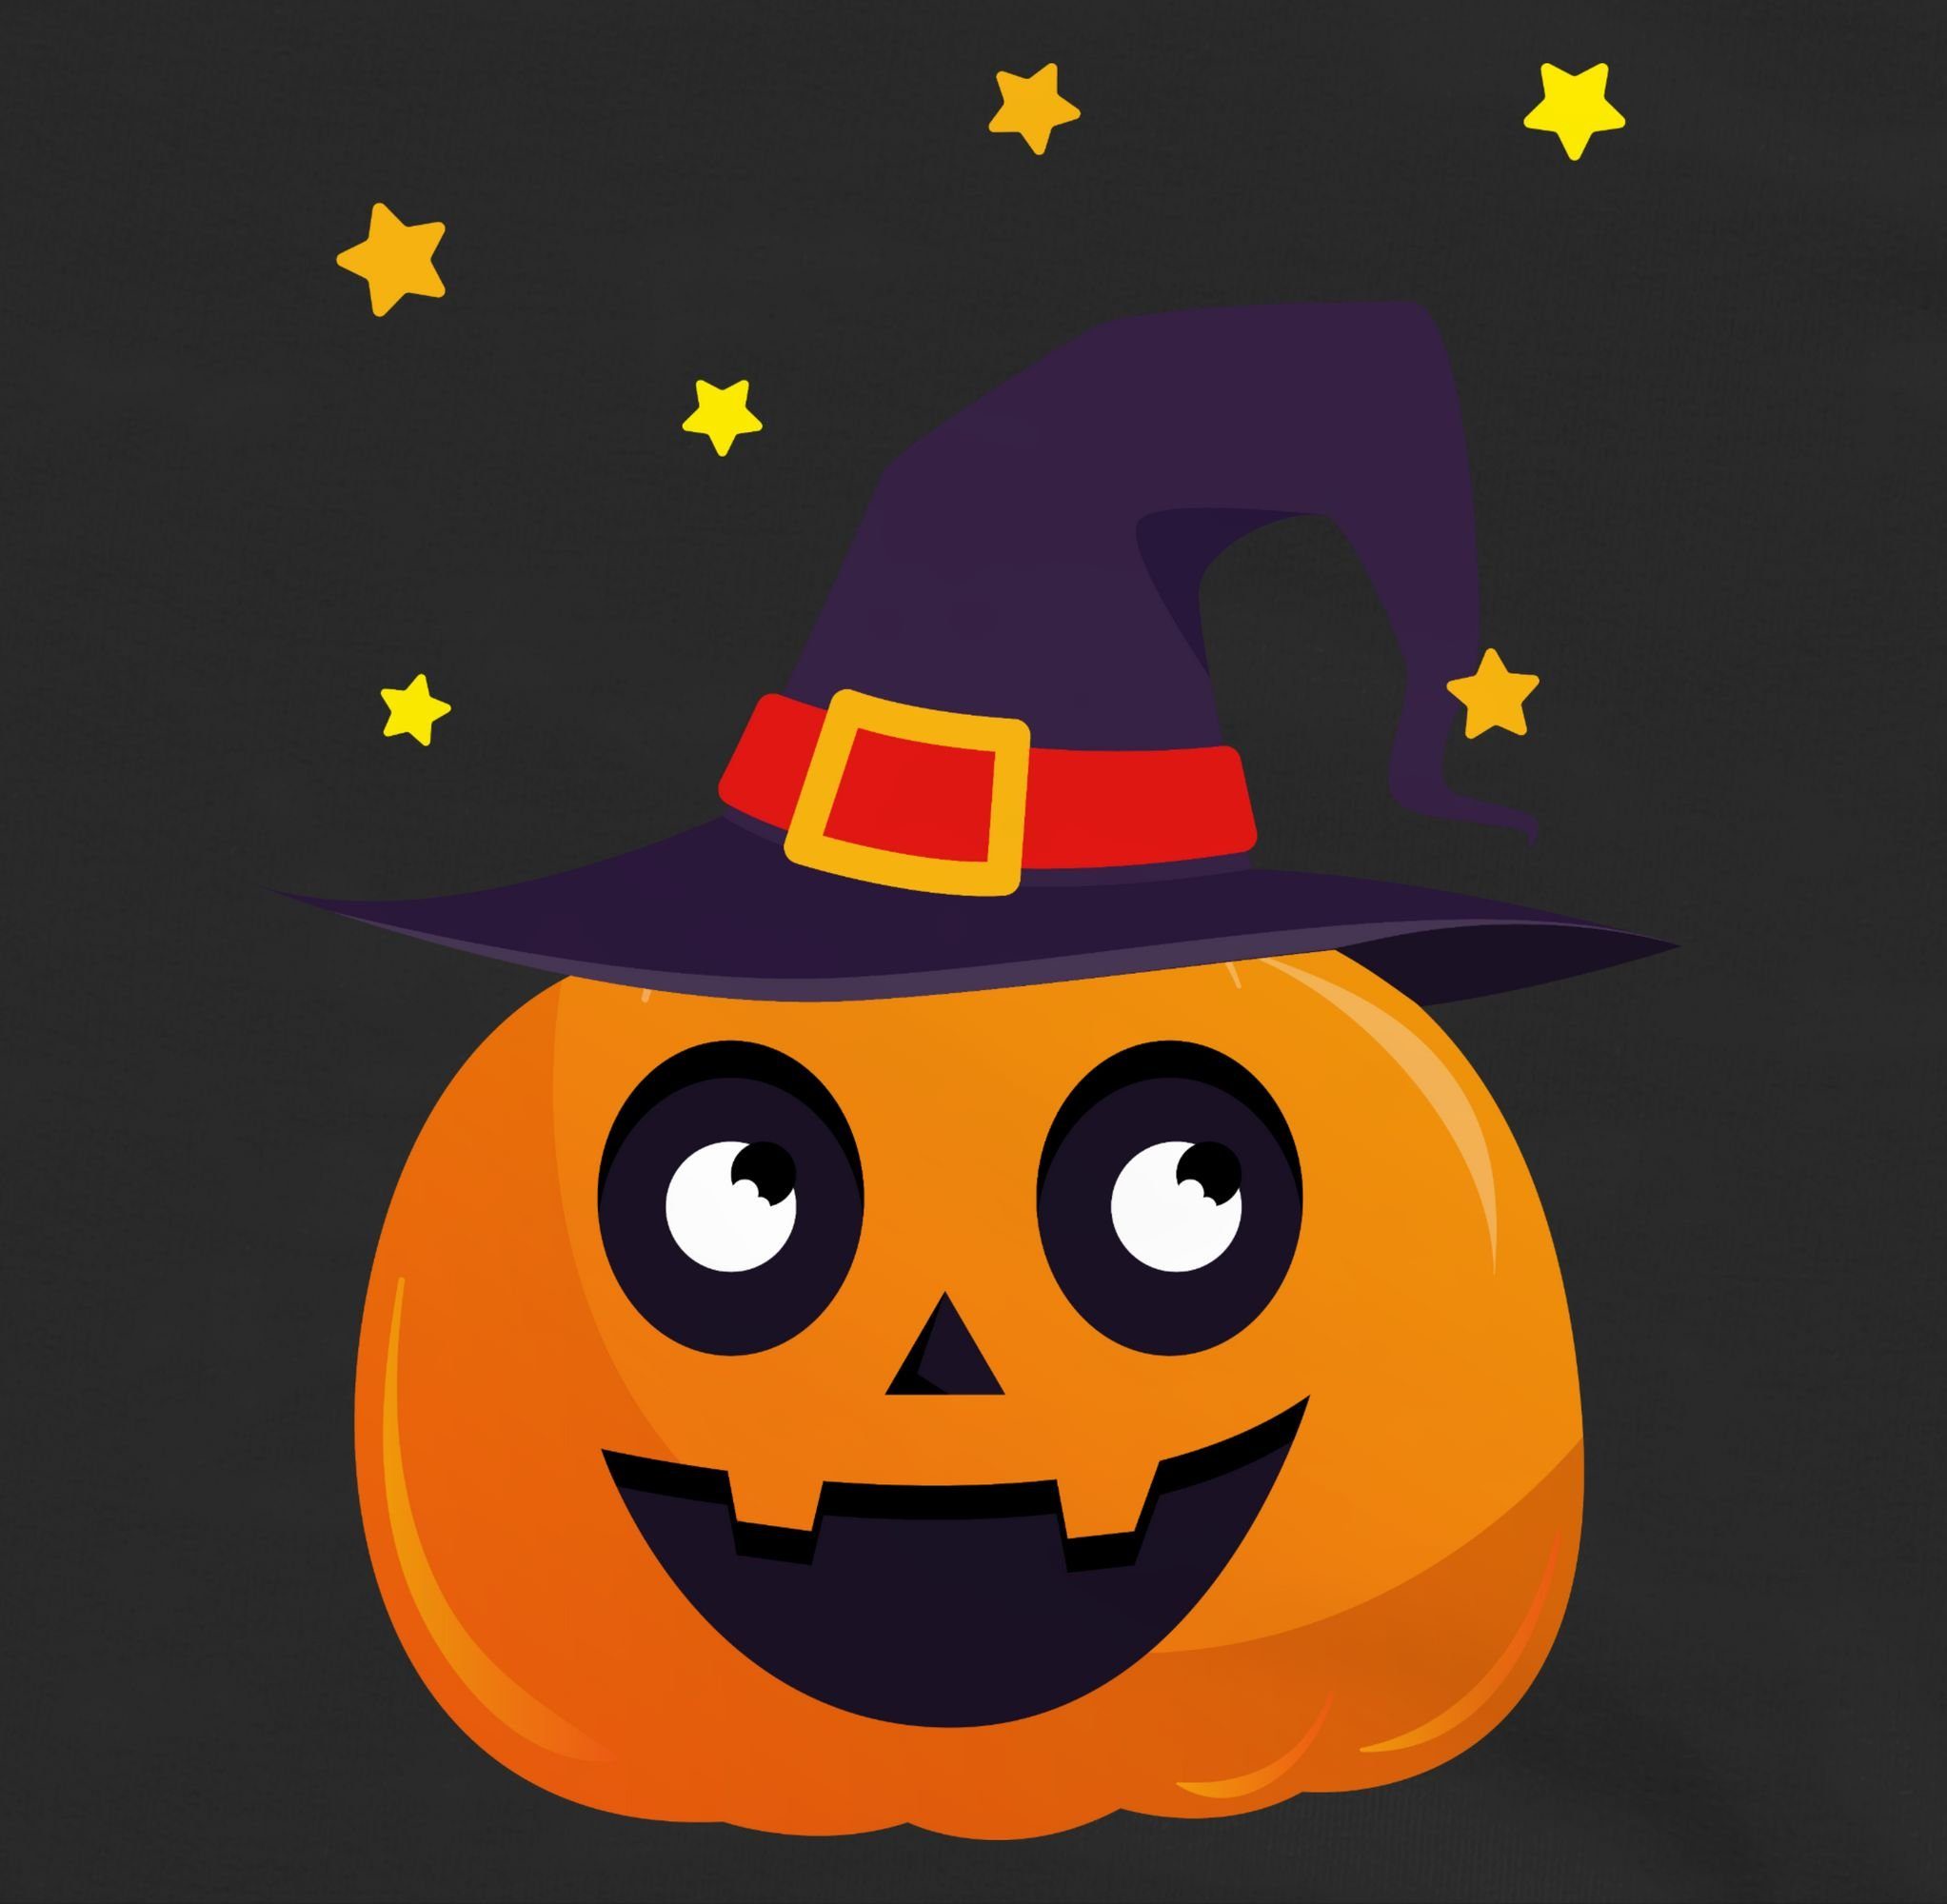 Niedlich Süßer Kinder 3 Shirtracer Schwarz Halloween Kürbis für Sweatshirt Pumpkin Kostüme